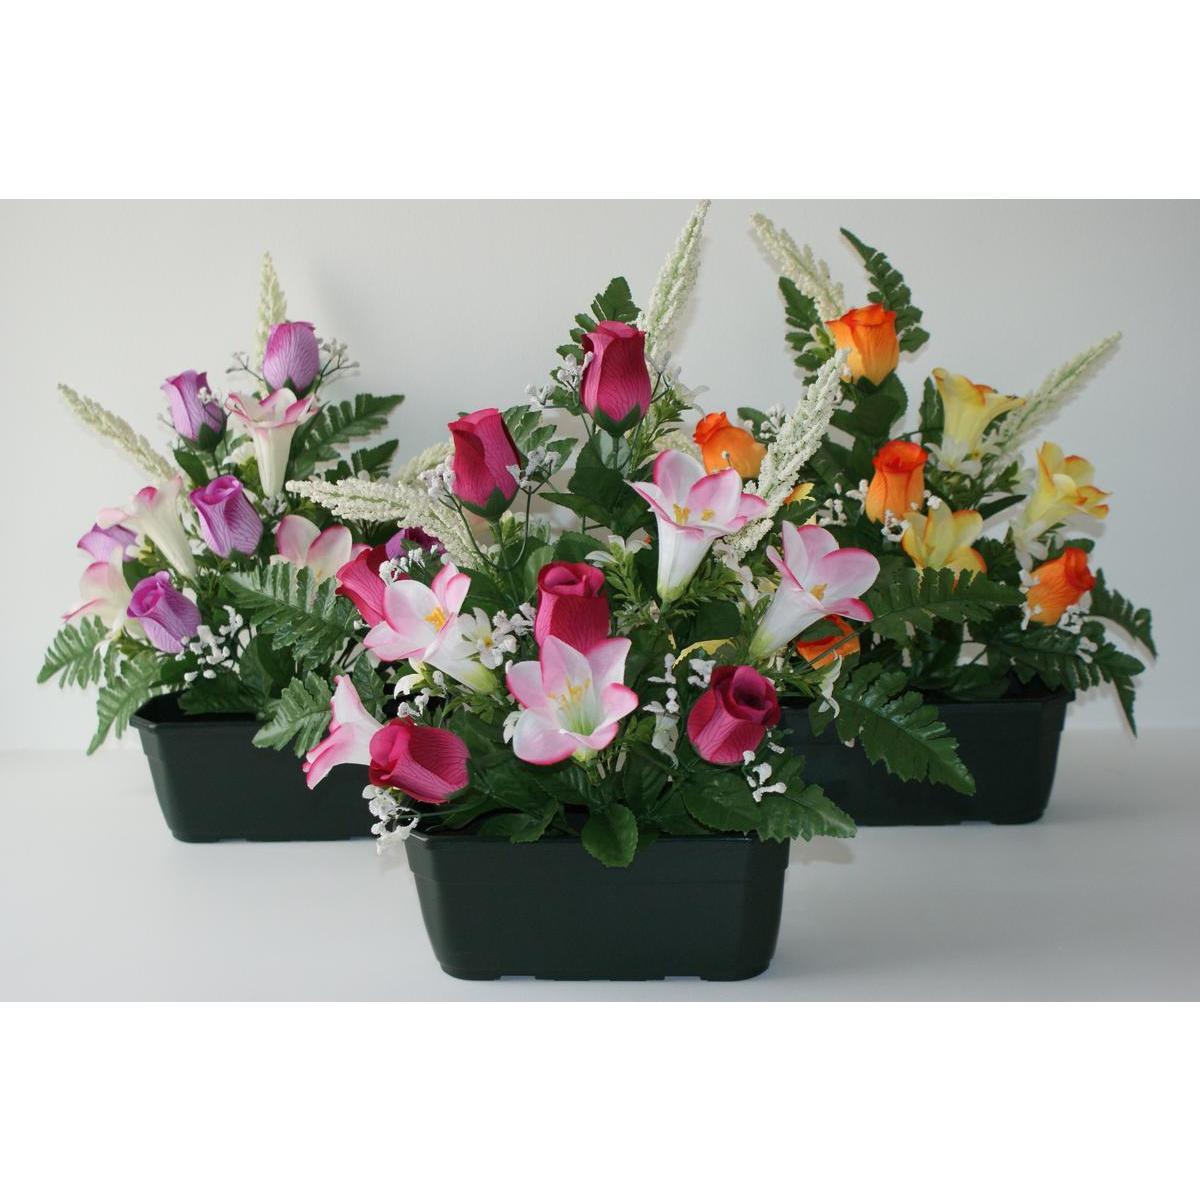 Jardinière de roses et de lys artificiels - ø 35 x H 45 cm - Différents coloris - Orange, violet, vert, rose